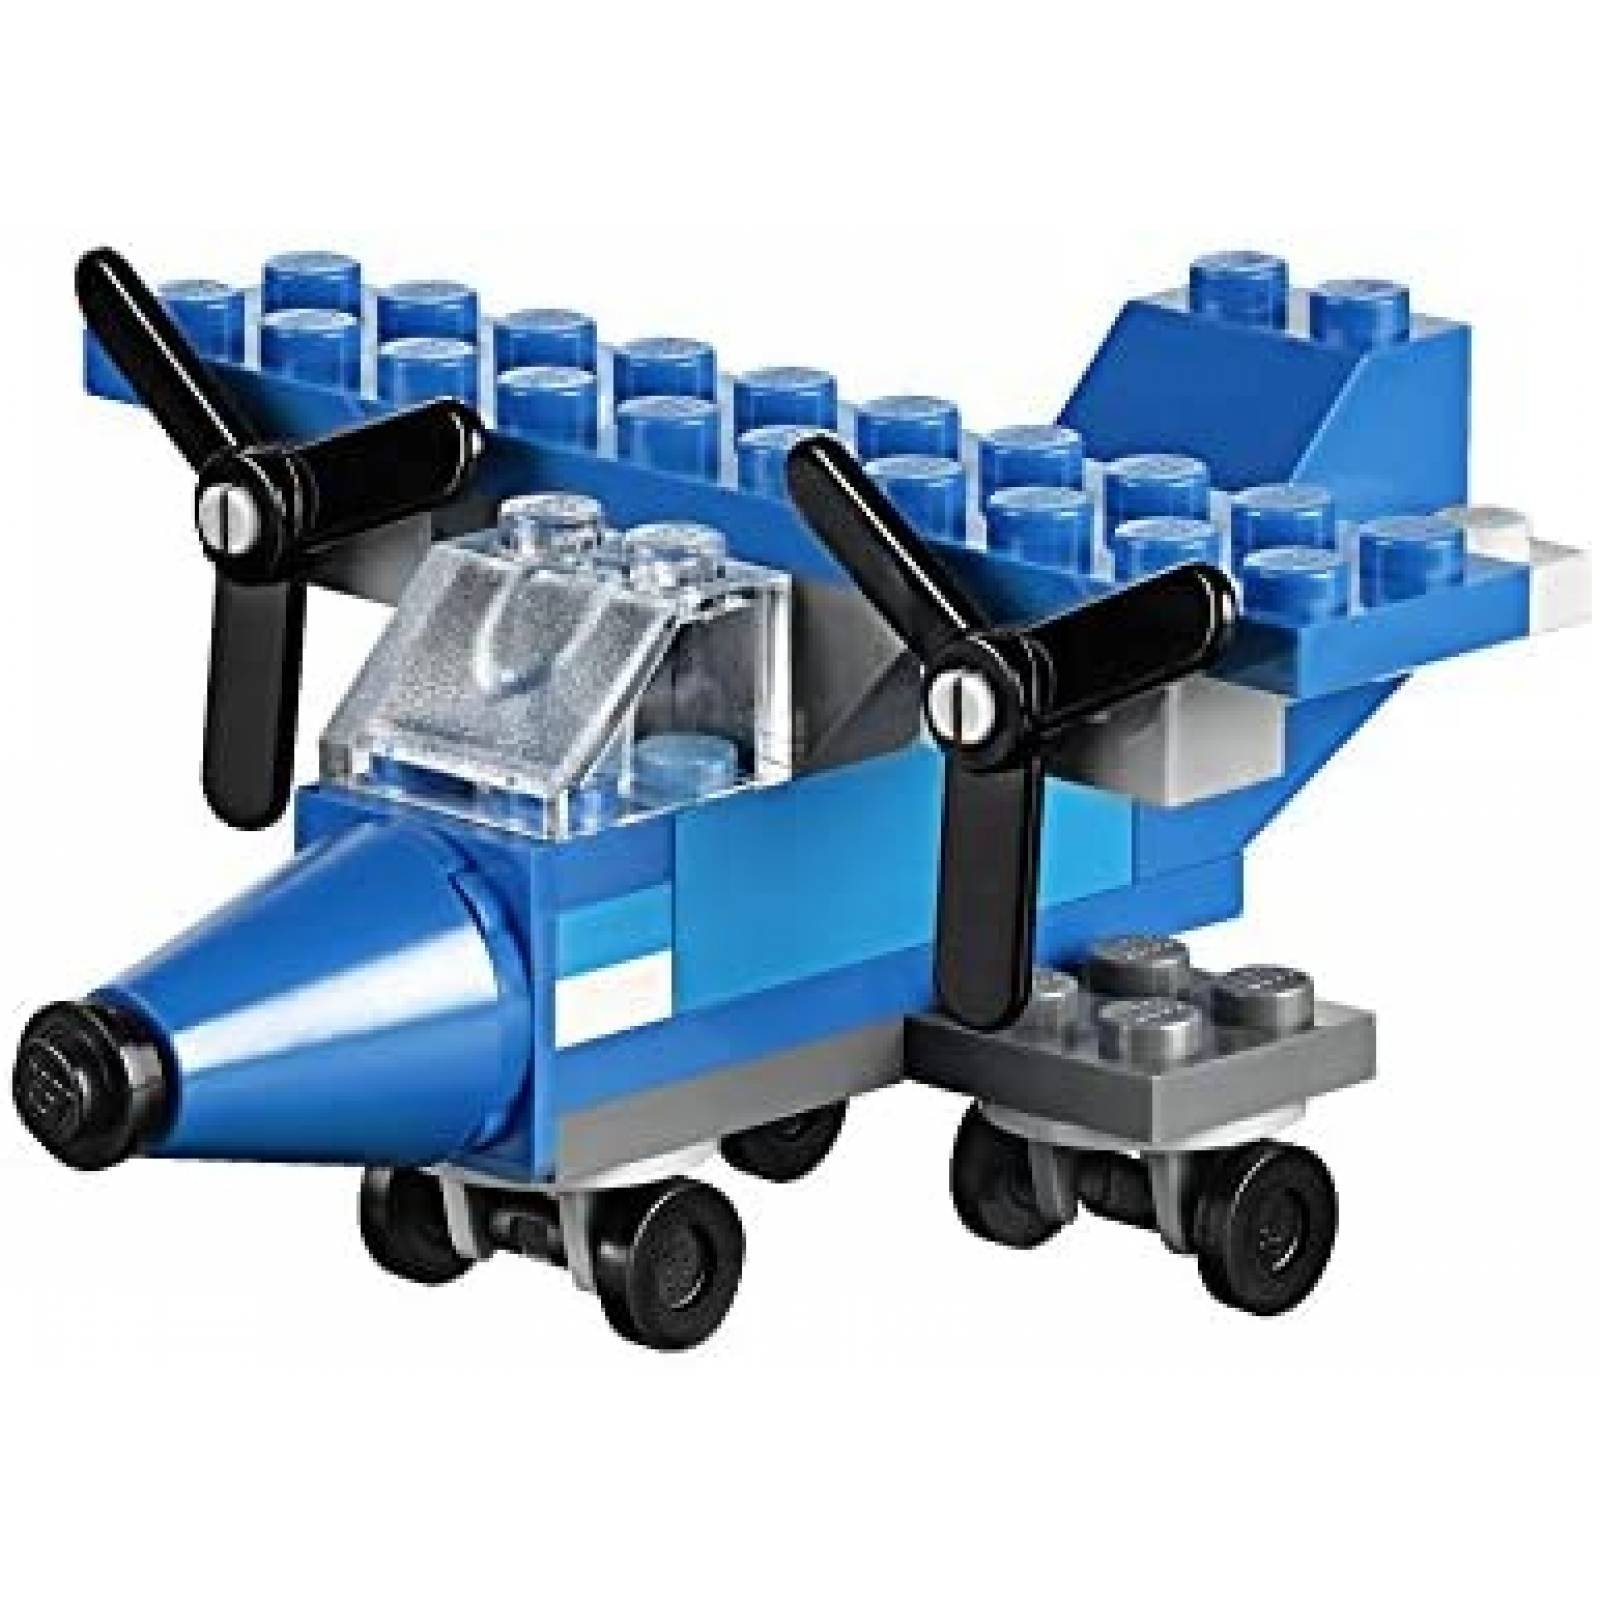 Juguete Armable LEGO 221 Piezas de 29 Colores para Niños